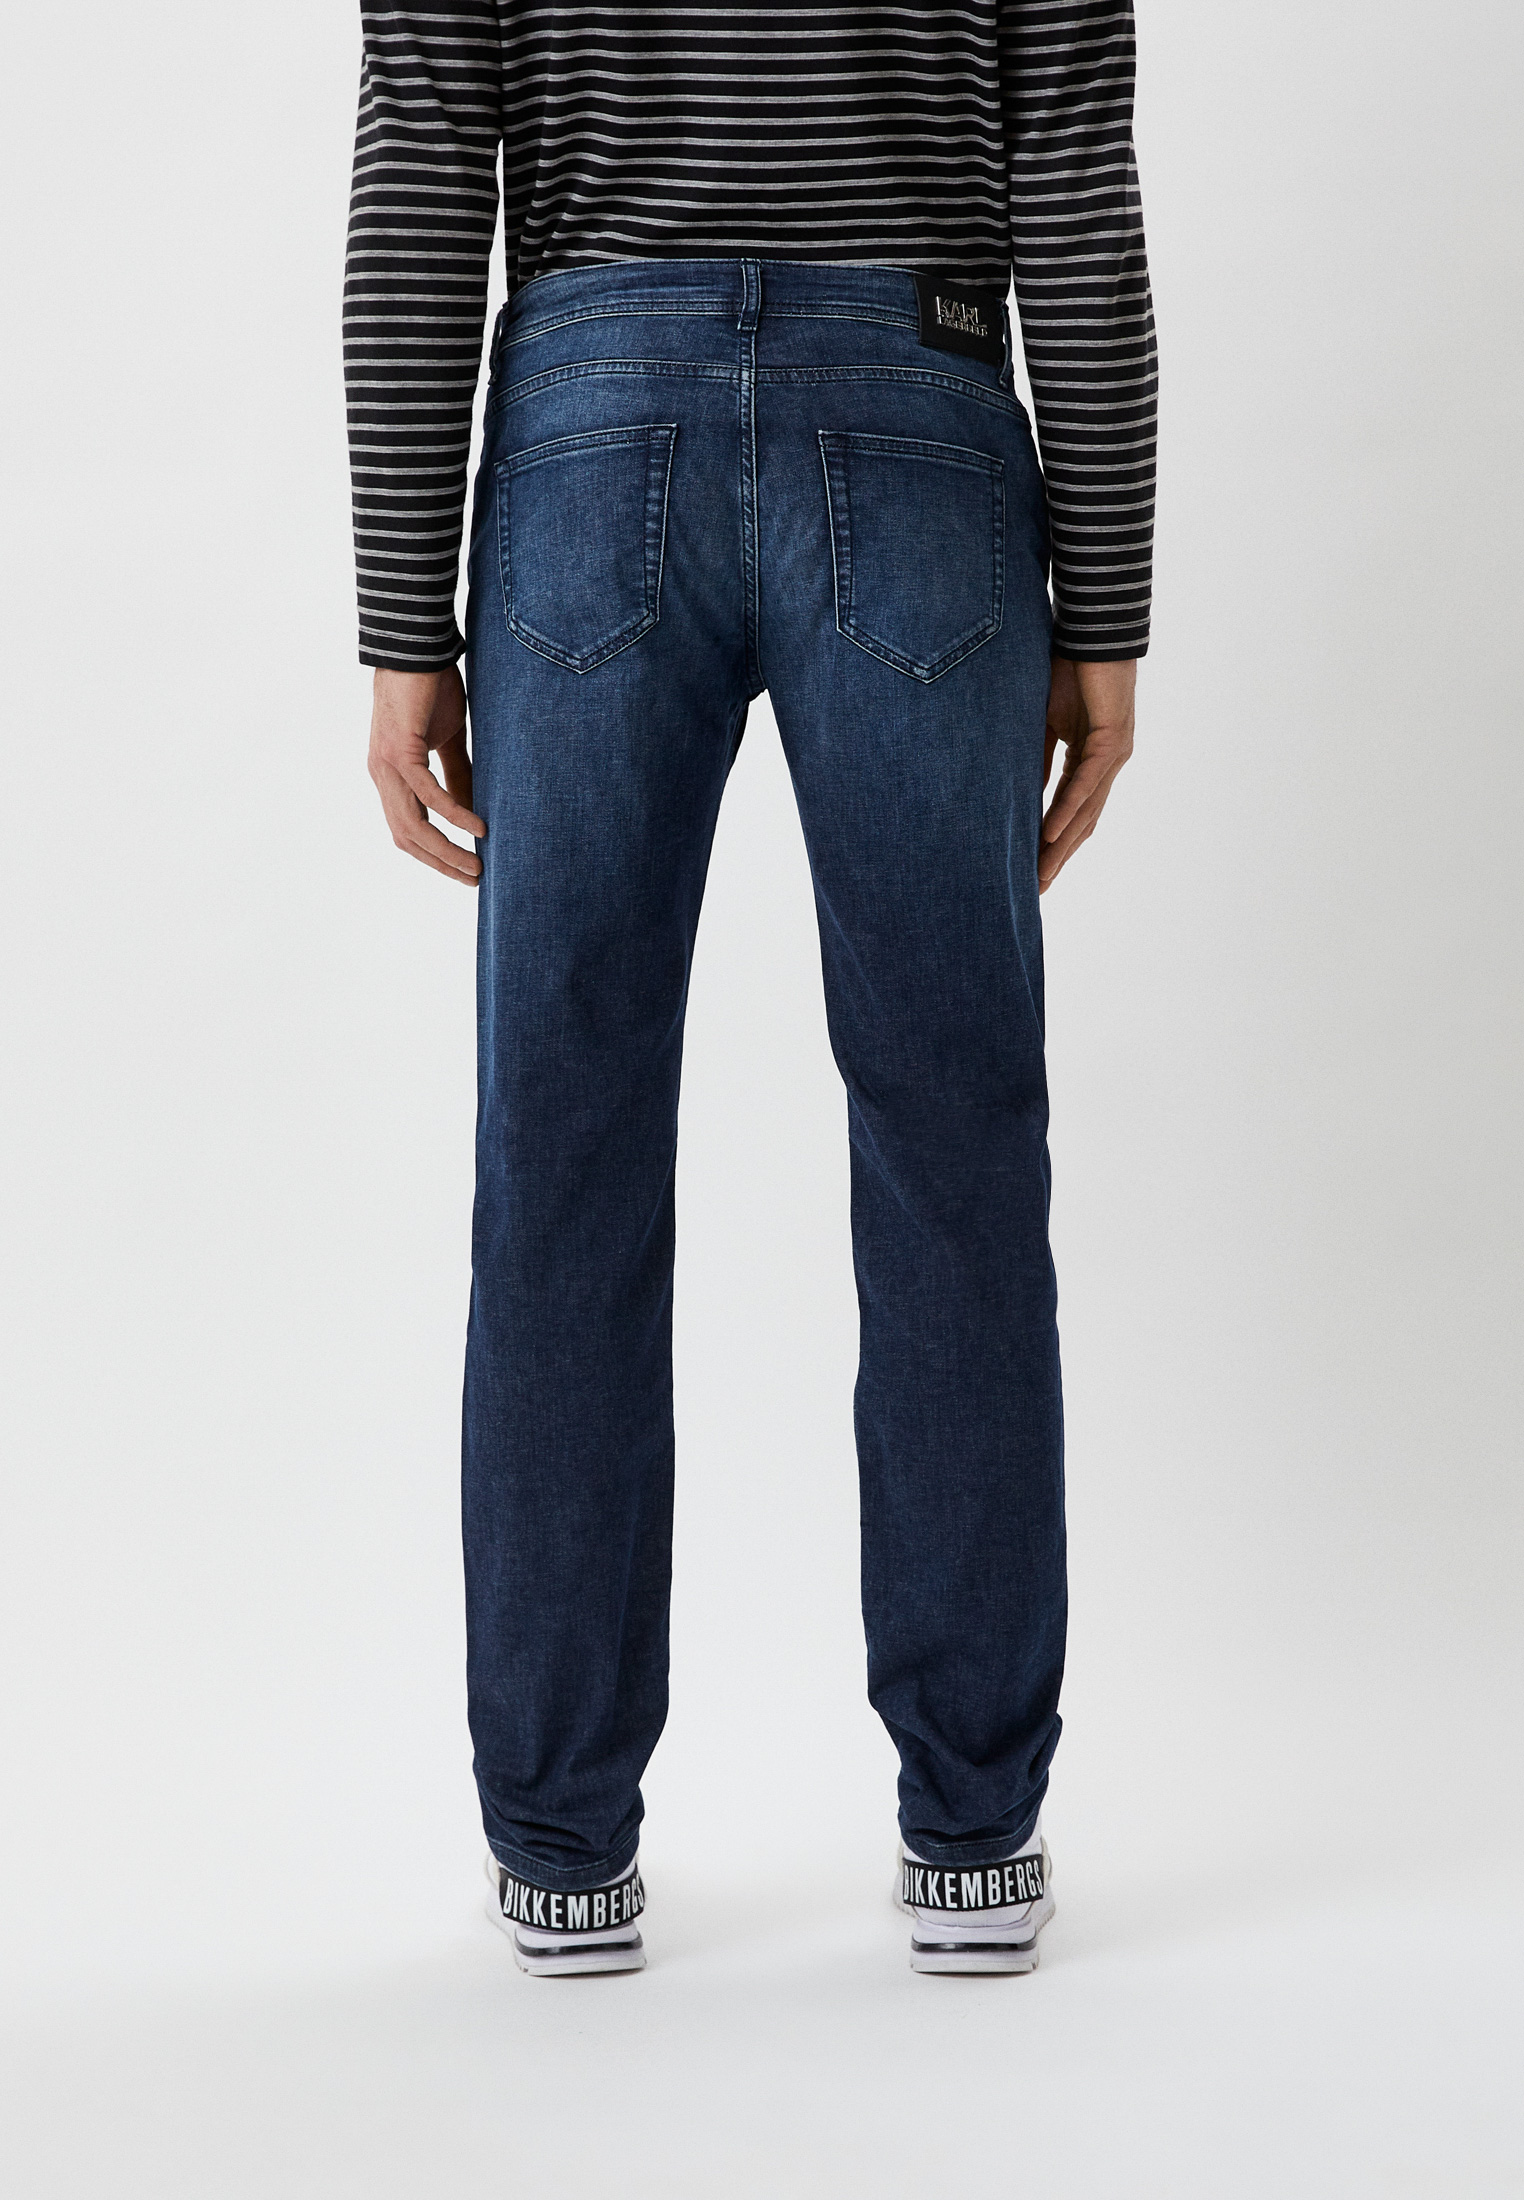 Мужские зауженные джинсы Karl Lagerfeld (Карл Лагерфельд) 521833-265840: изображение 3